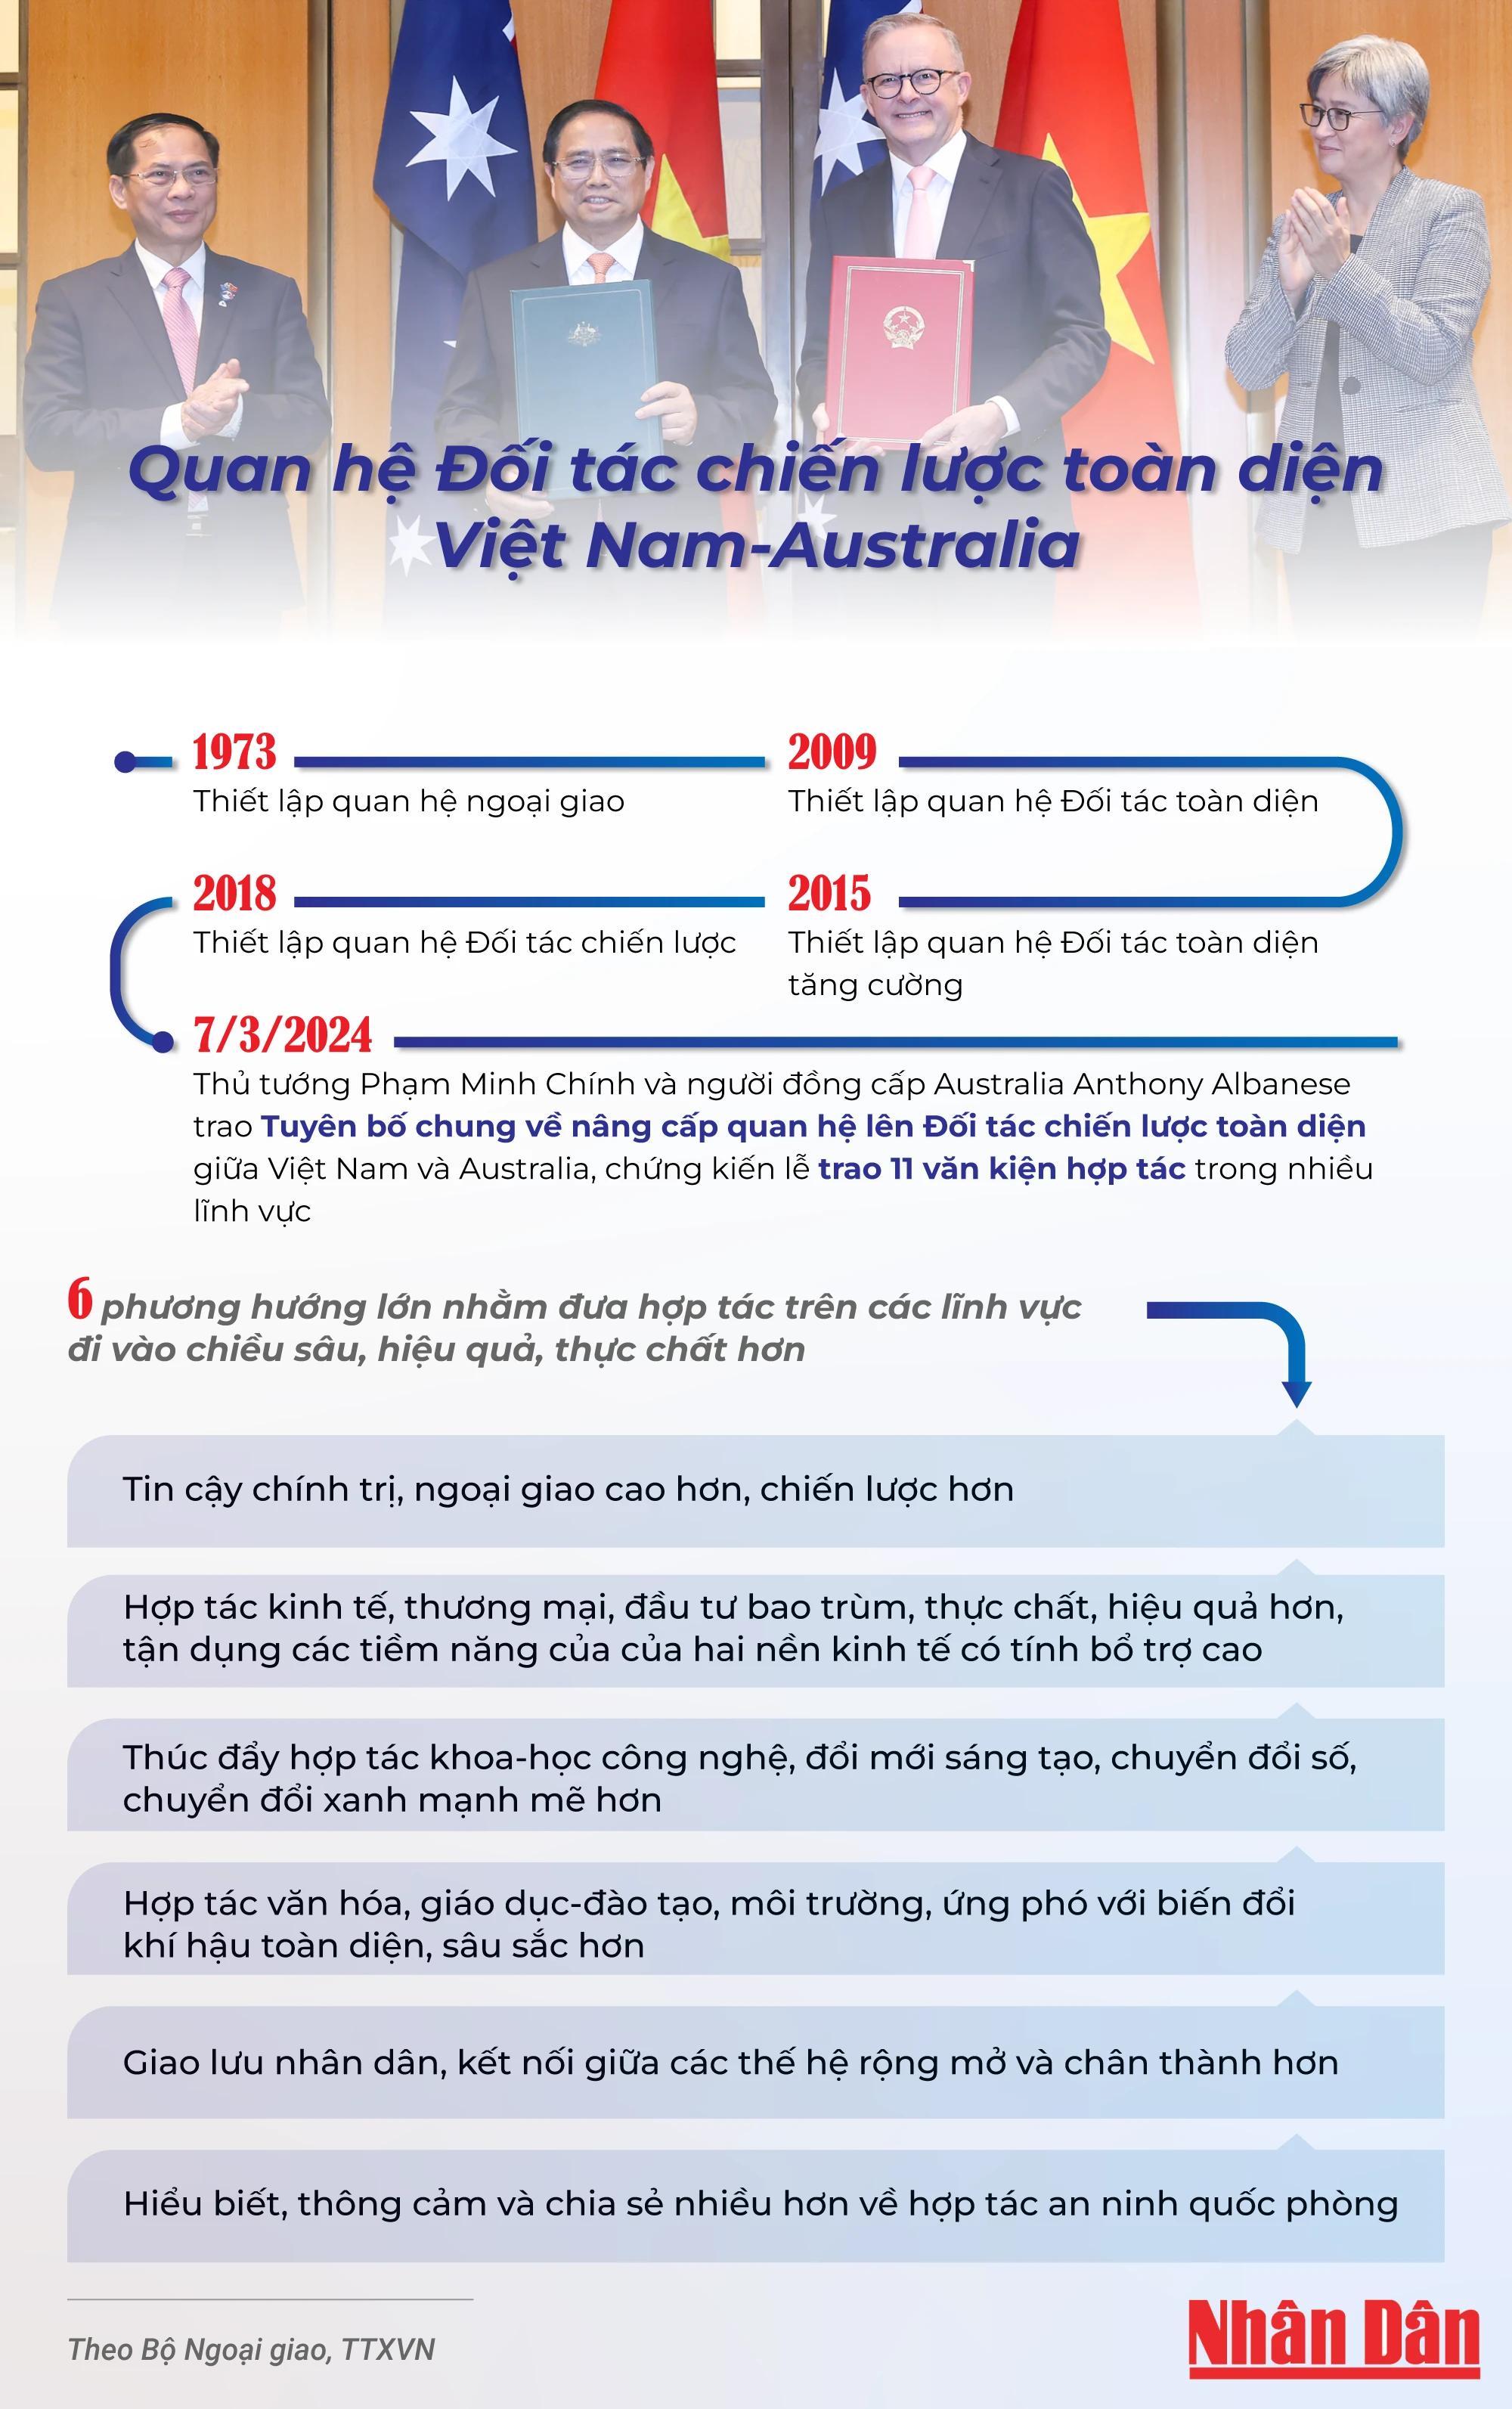 [Infographic] Quan hệ Đối tác chiến lược toàn diện Việt Nam-Australia ảnh 1